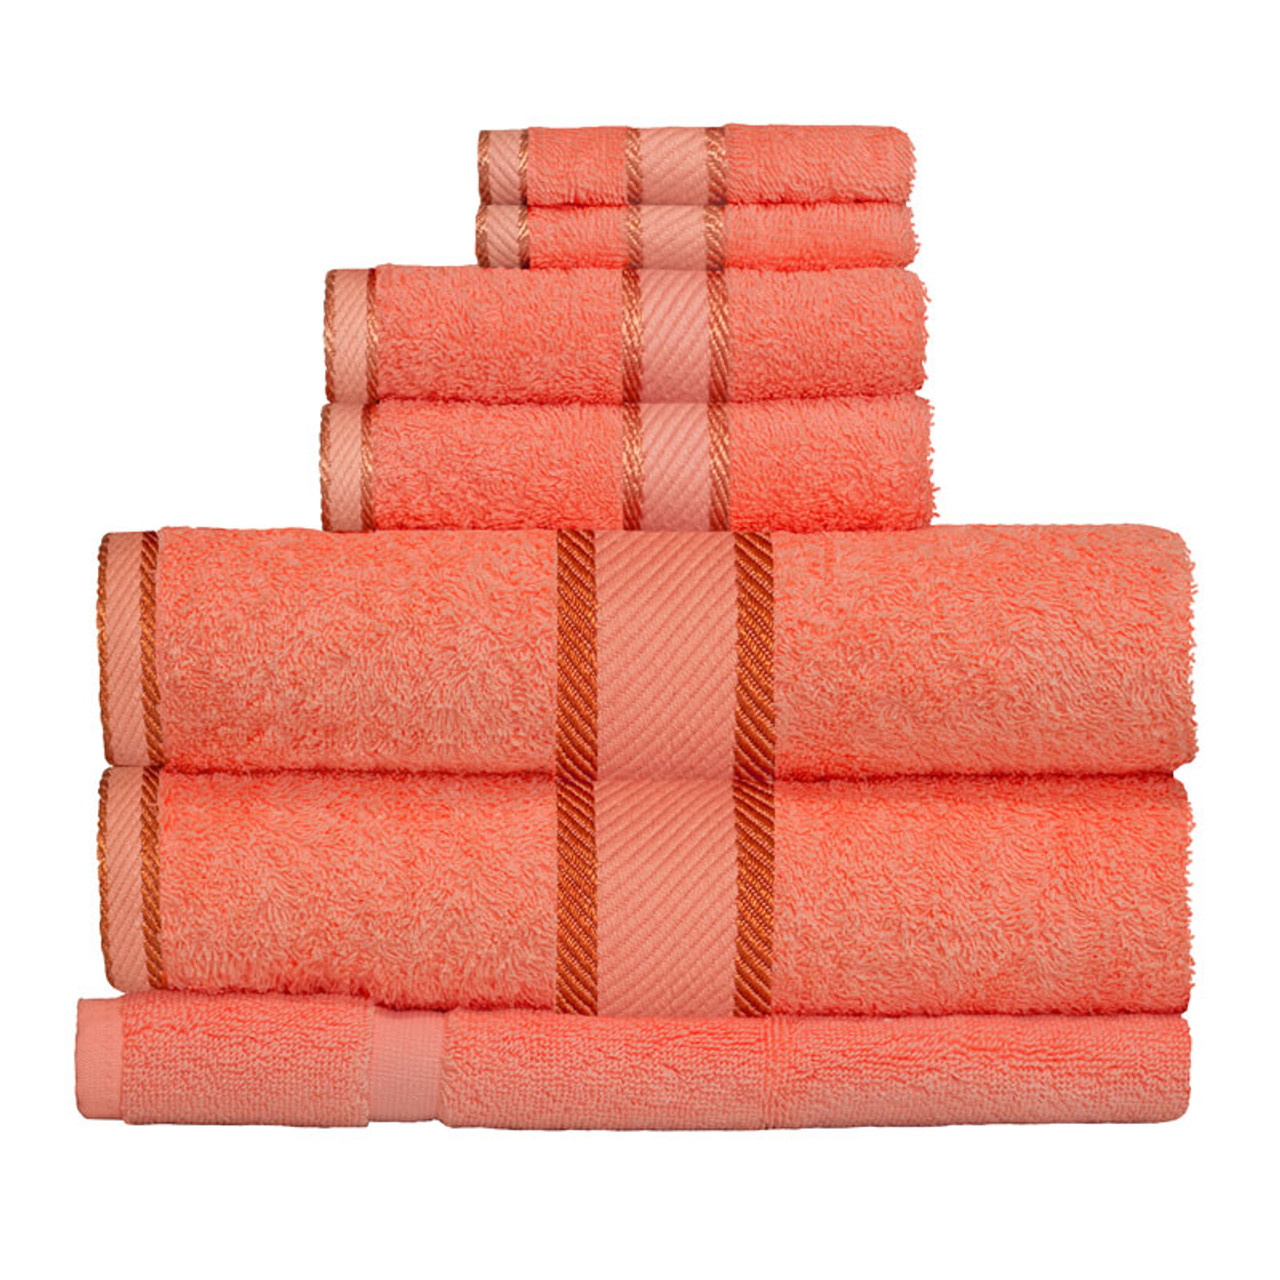 100% Cotton Terracotta / Rust Towels | 7pc Bath Towel Set